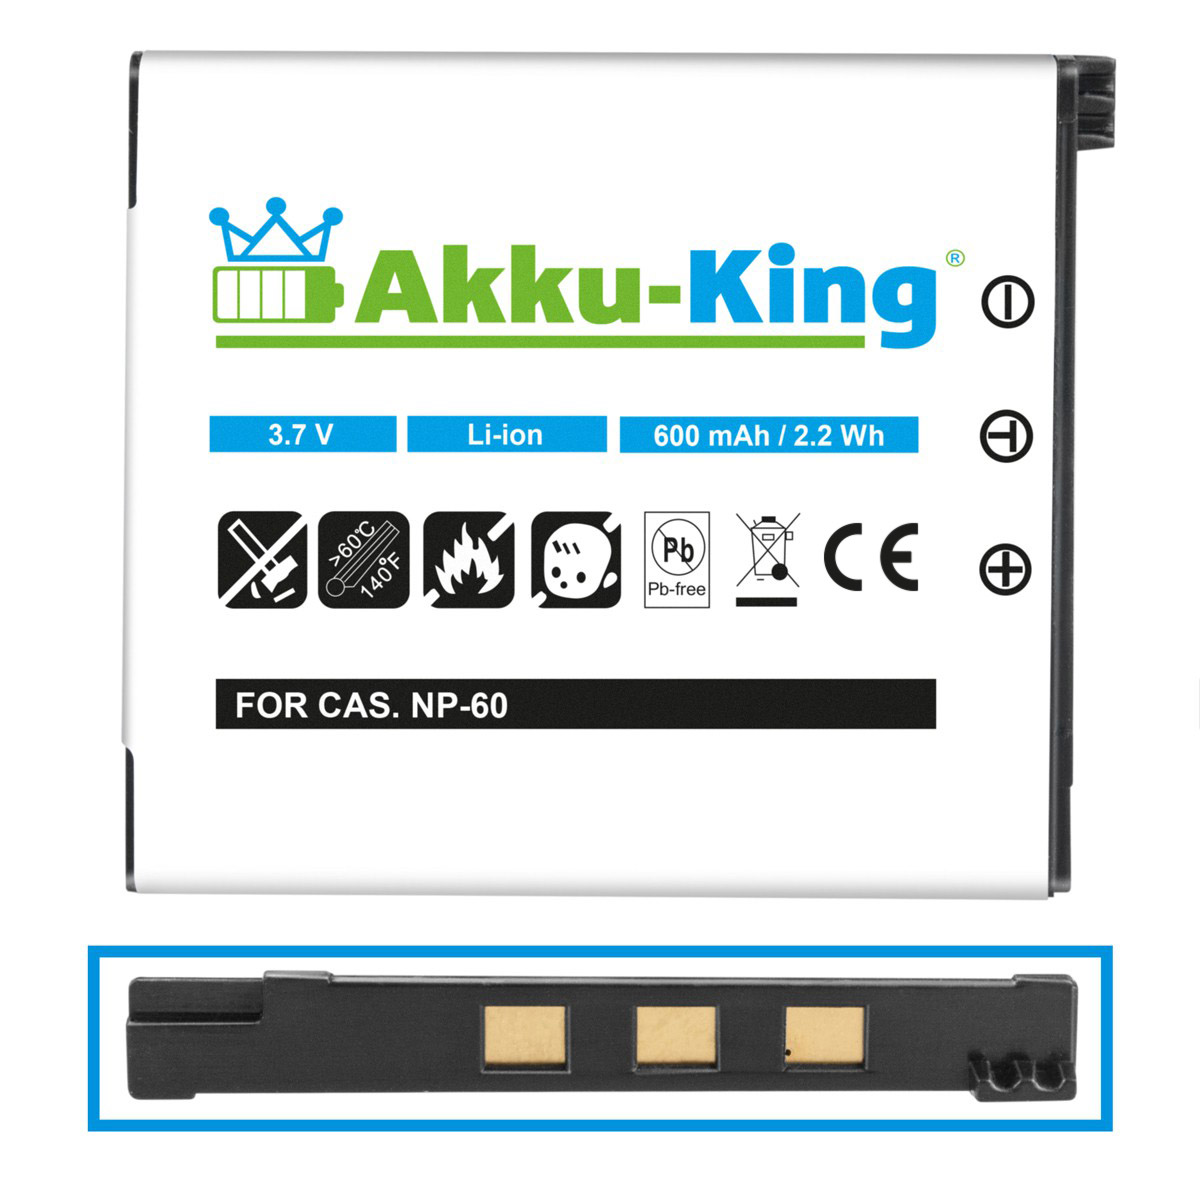 AKKU-KING Akku kompatibel mit Casio Li-Ion 3.7 NP-60 Volt, Kamera-Akku, 600mAh